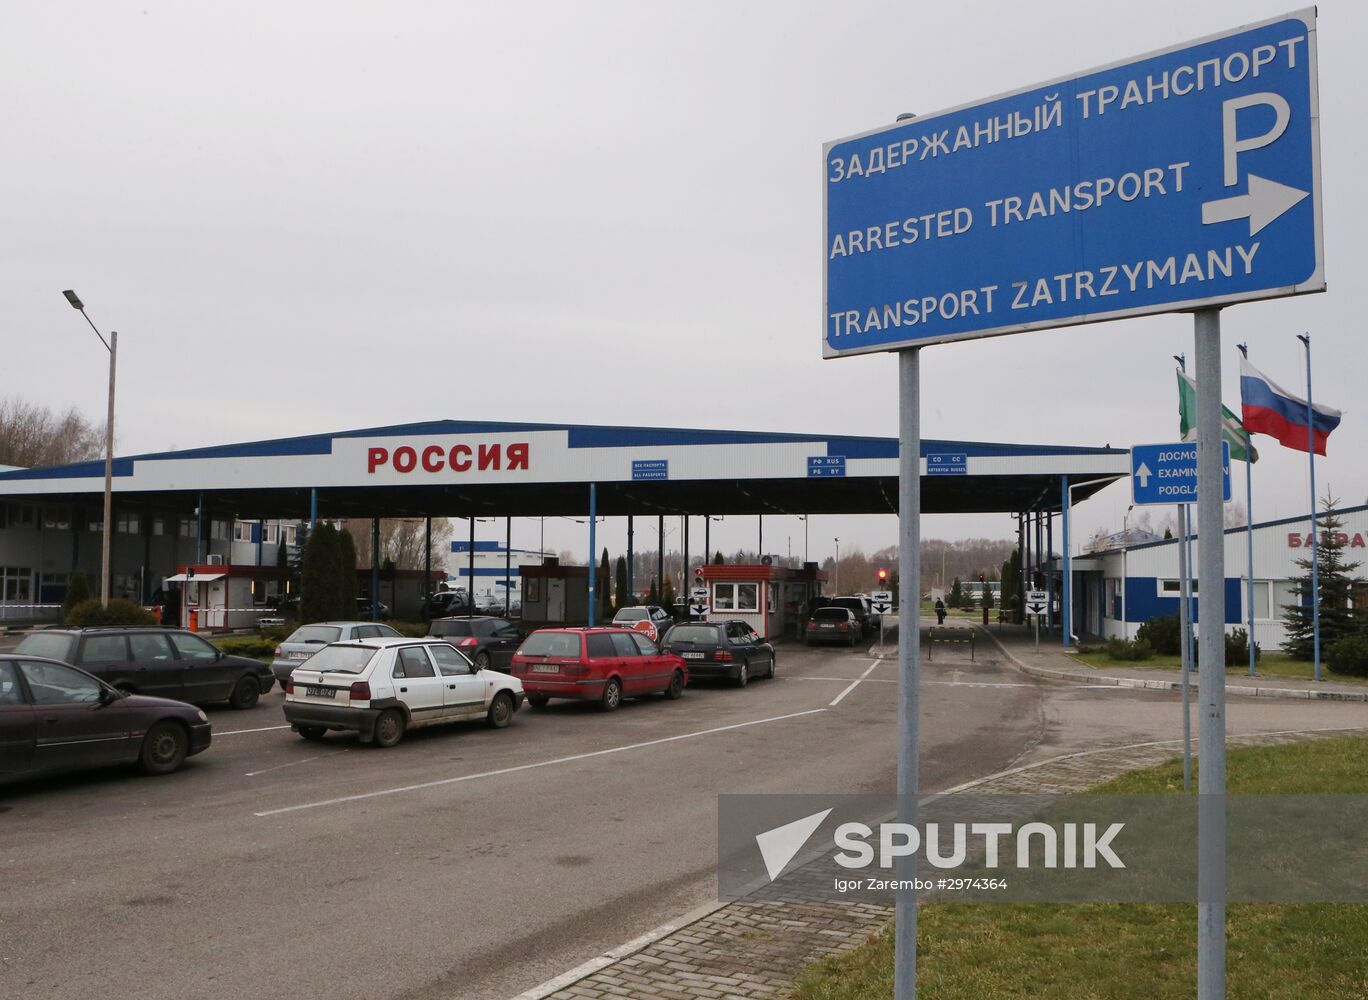 Bagrationovsk customs checkpoint in Kaliningrad Region